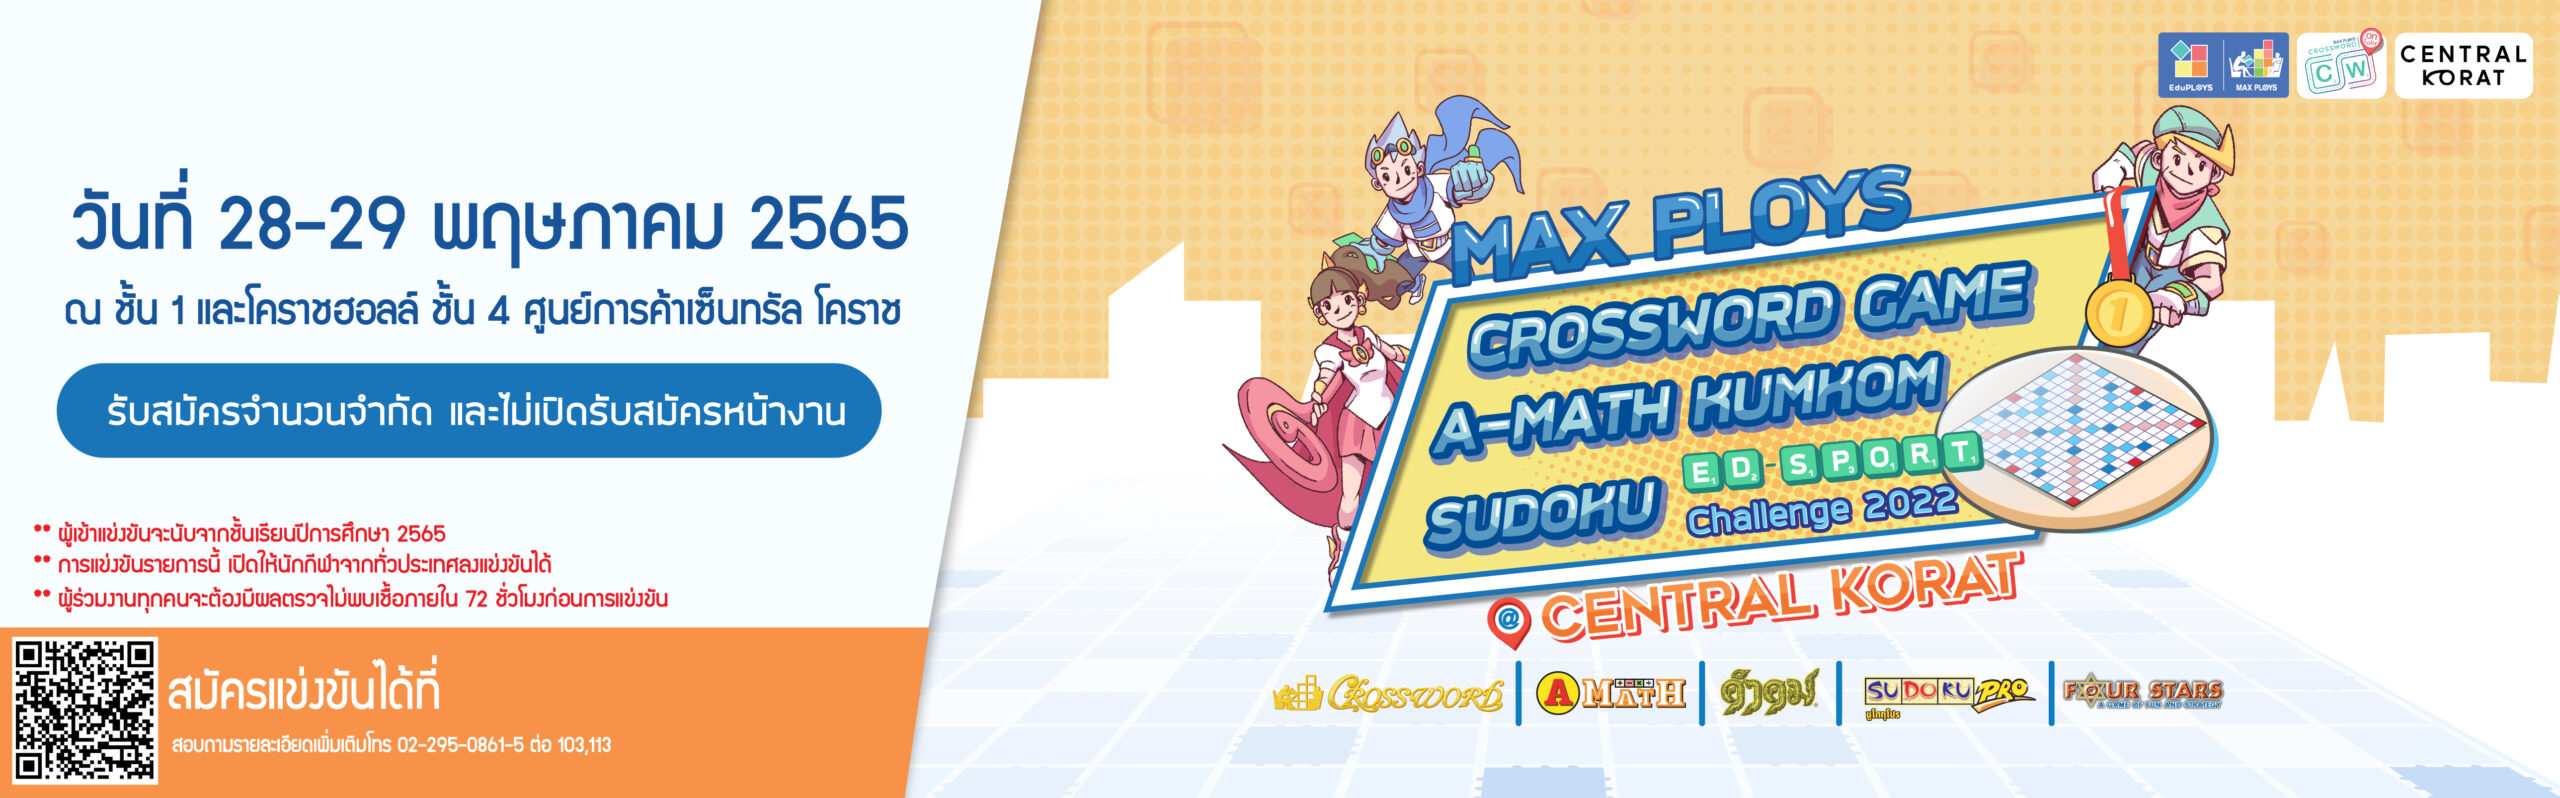 การแข่งขัน Max Ploys Crossword Game A-Math Kumkom Sudoku Ed-Sport Challenge 2022 @Central Korat